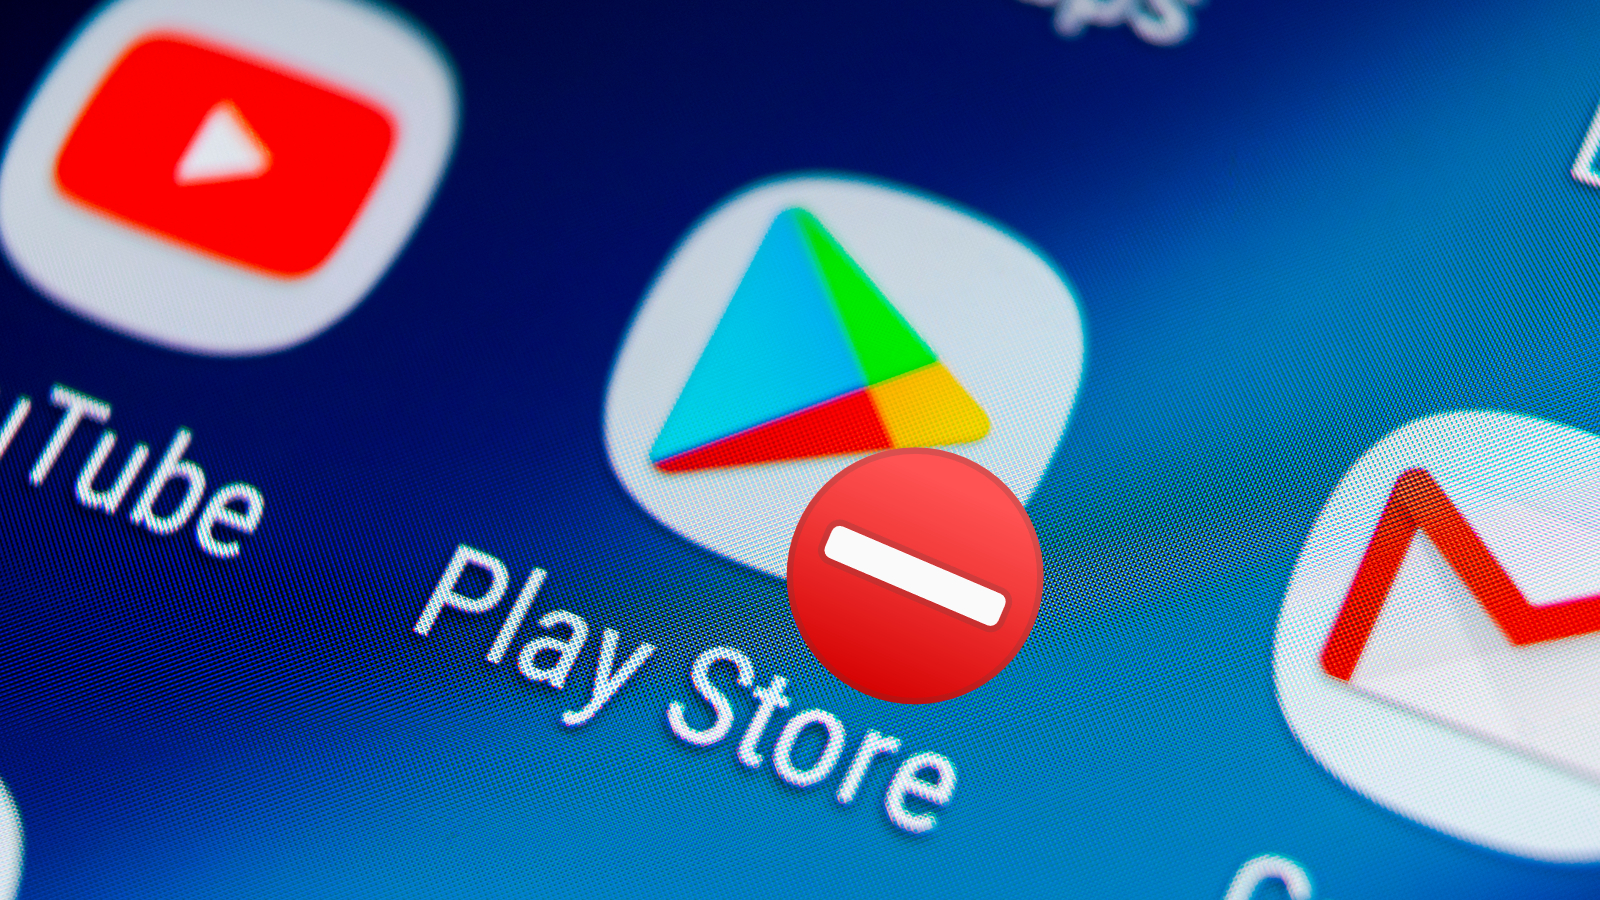 La nouvelle mise à jour du Play Store facilite la recherche d'applications pour les personnes handicapées